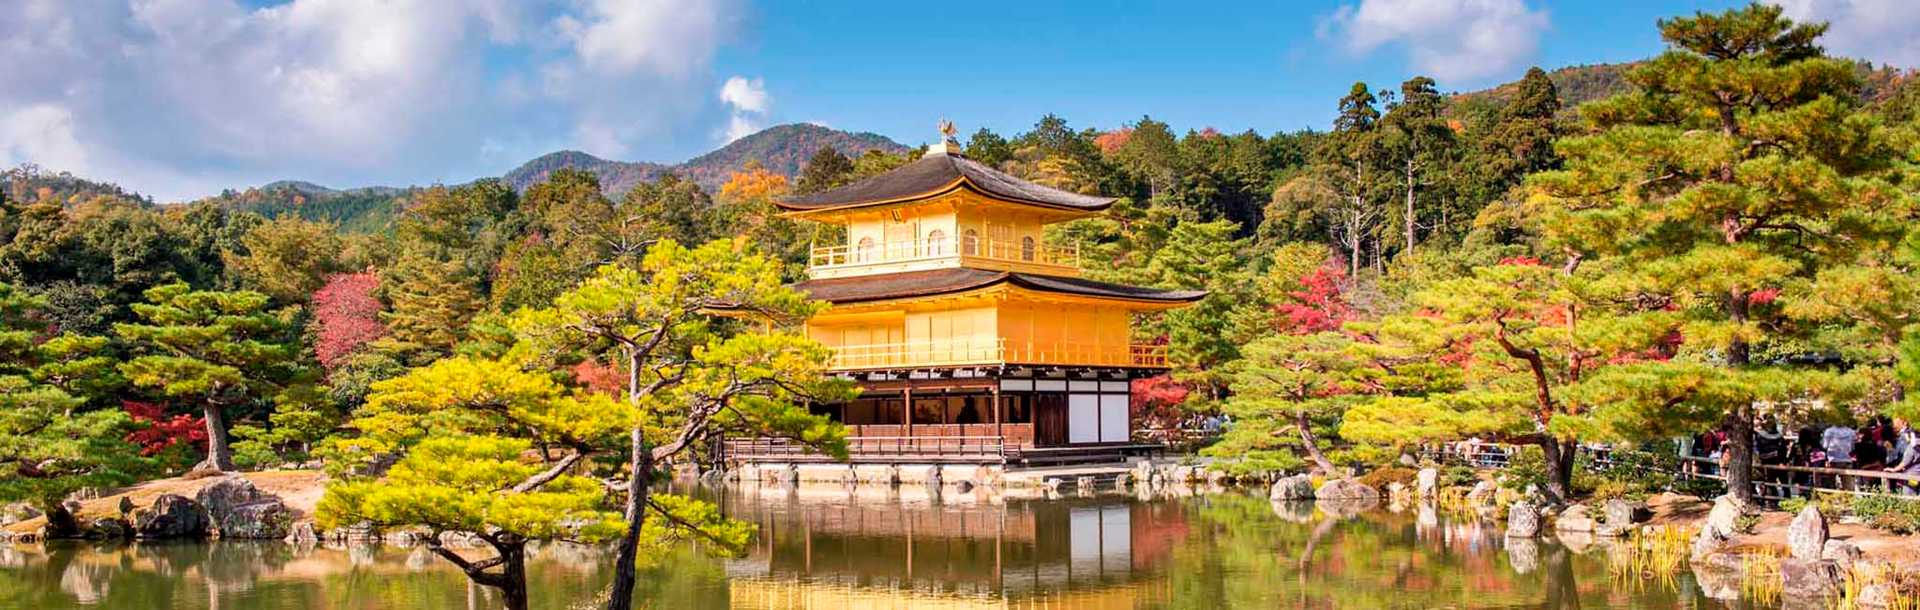 Golden Pavilion Kinkakuji Temples in Kyoto